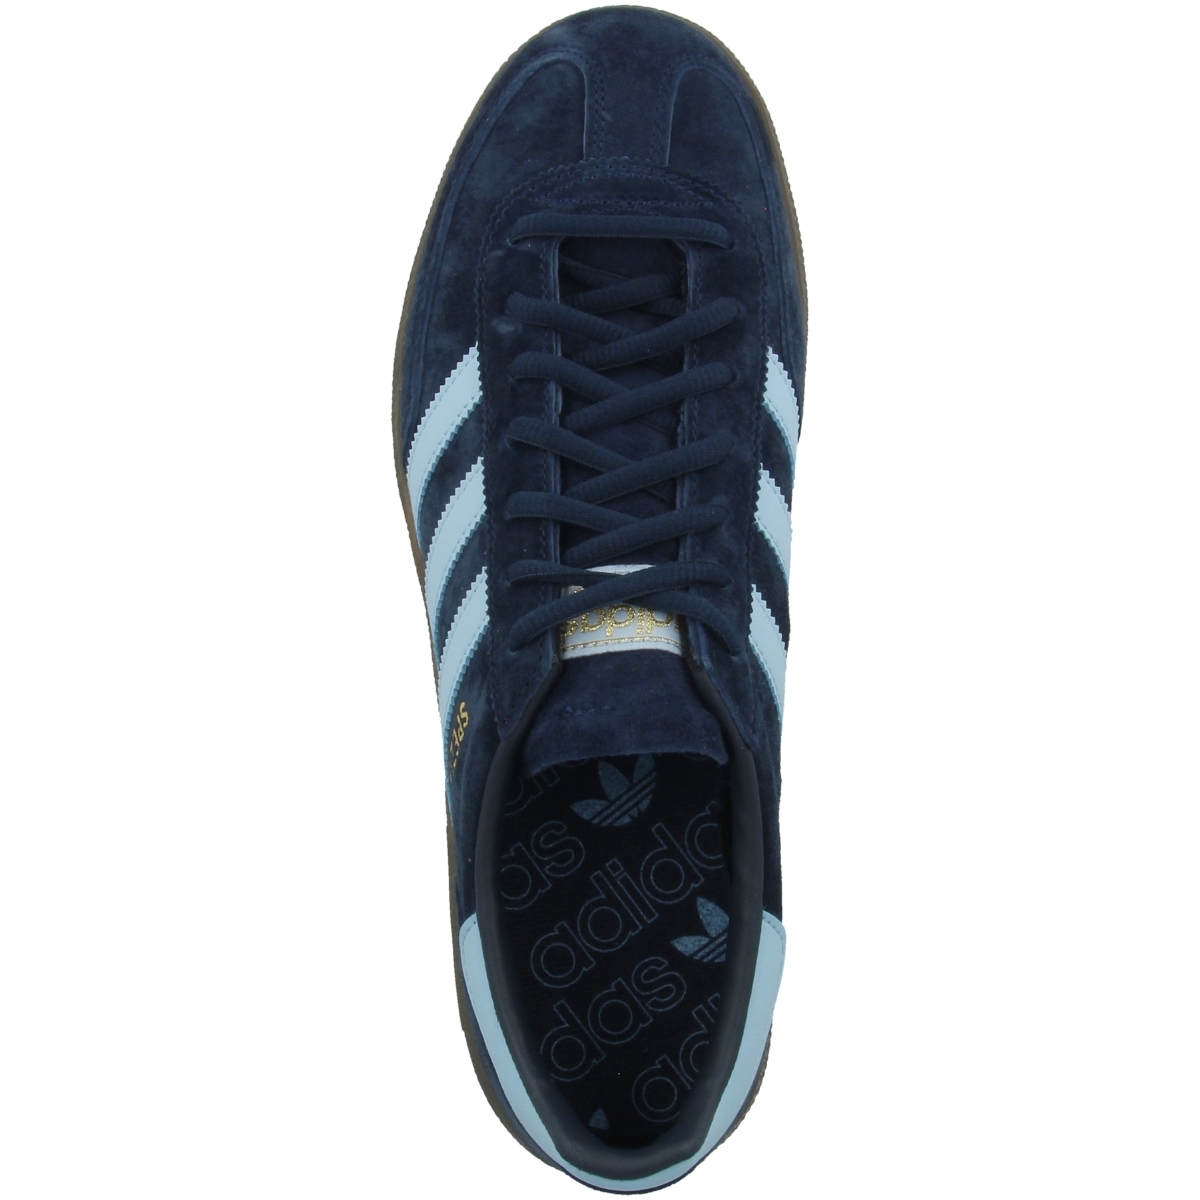 Adidas Handball Spezial Sneaker low blau